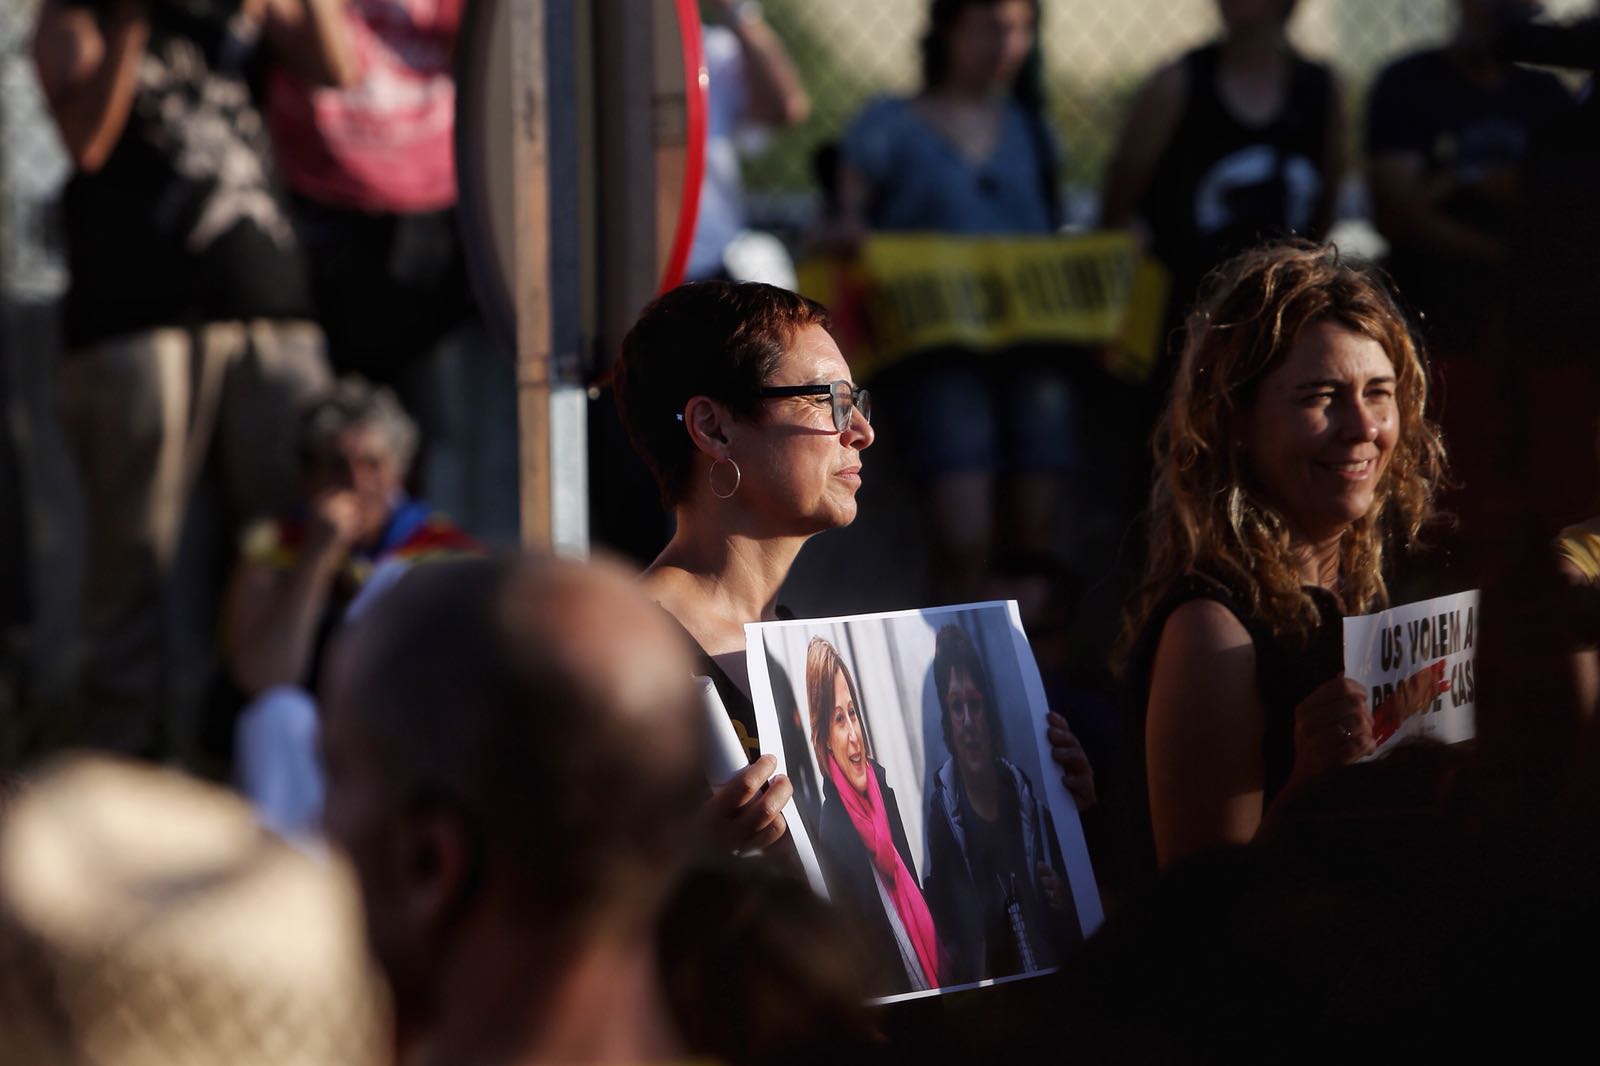 L’emotiu discurs de Montse Bassa: “Han entrat a Catalunya però no són a casa”